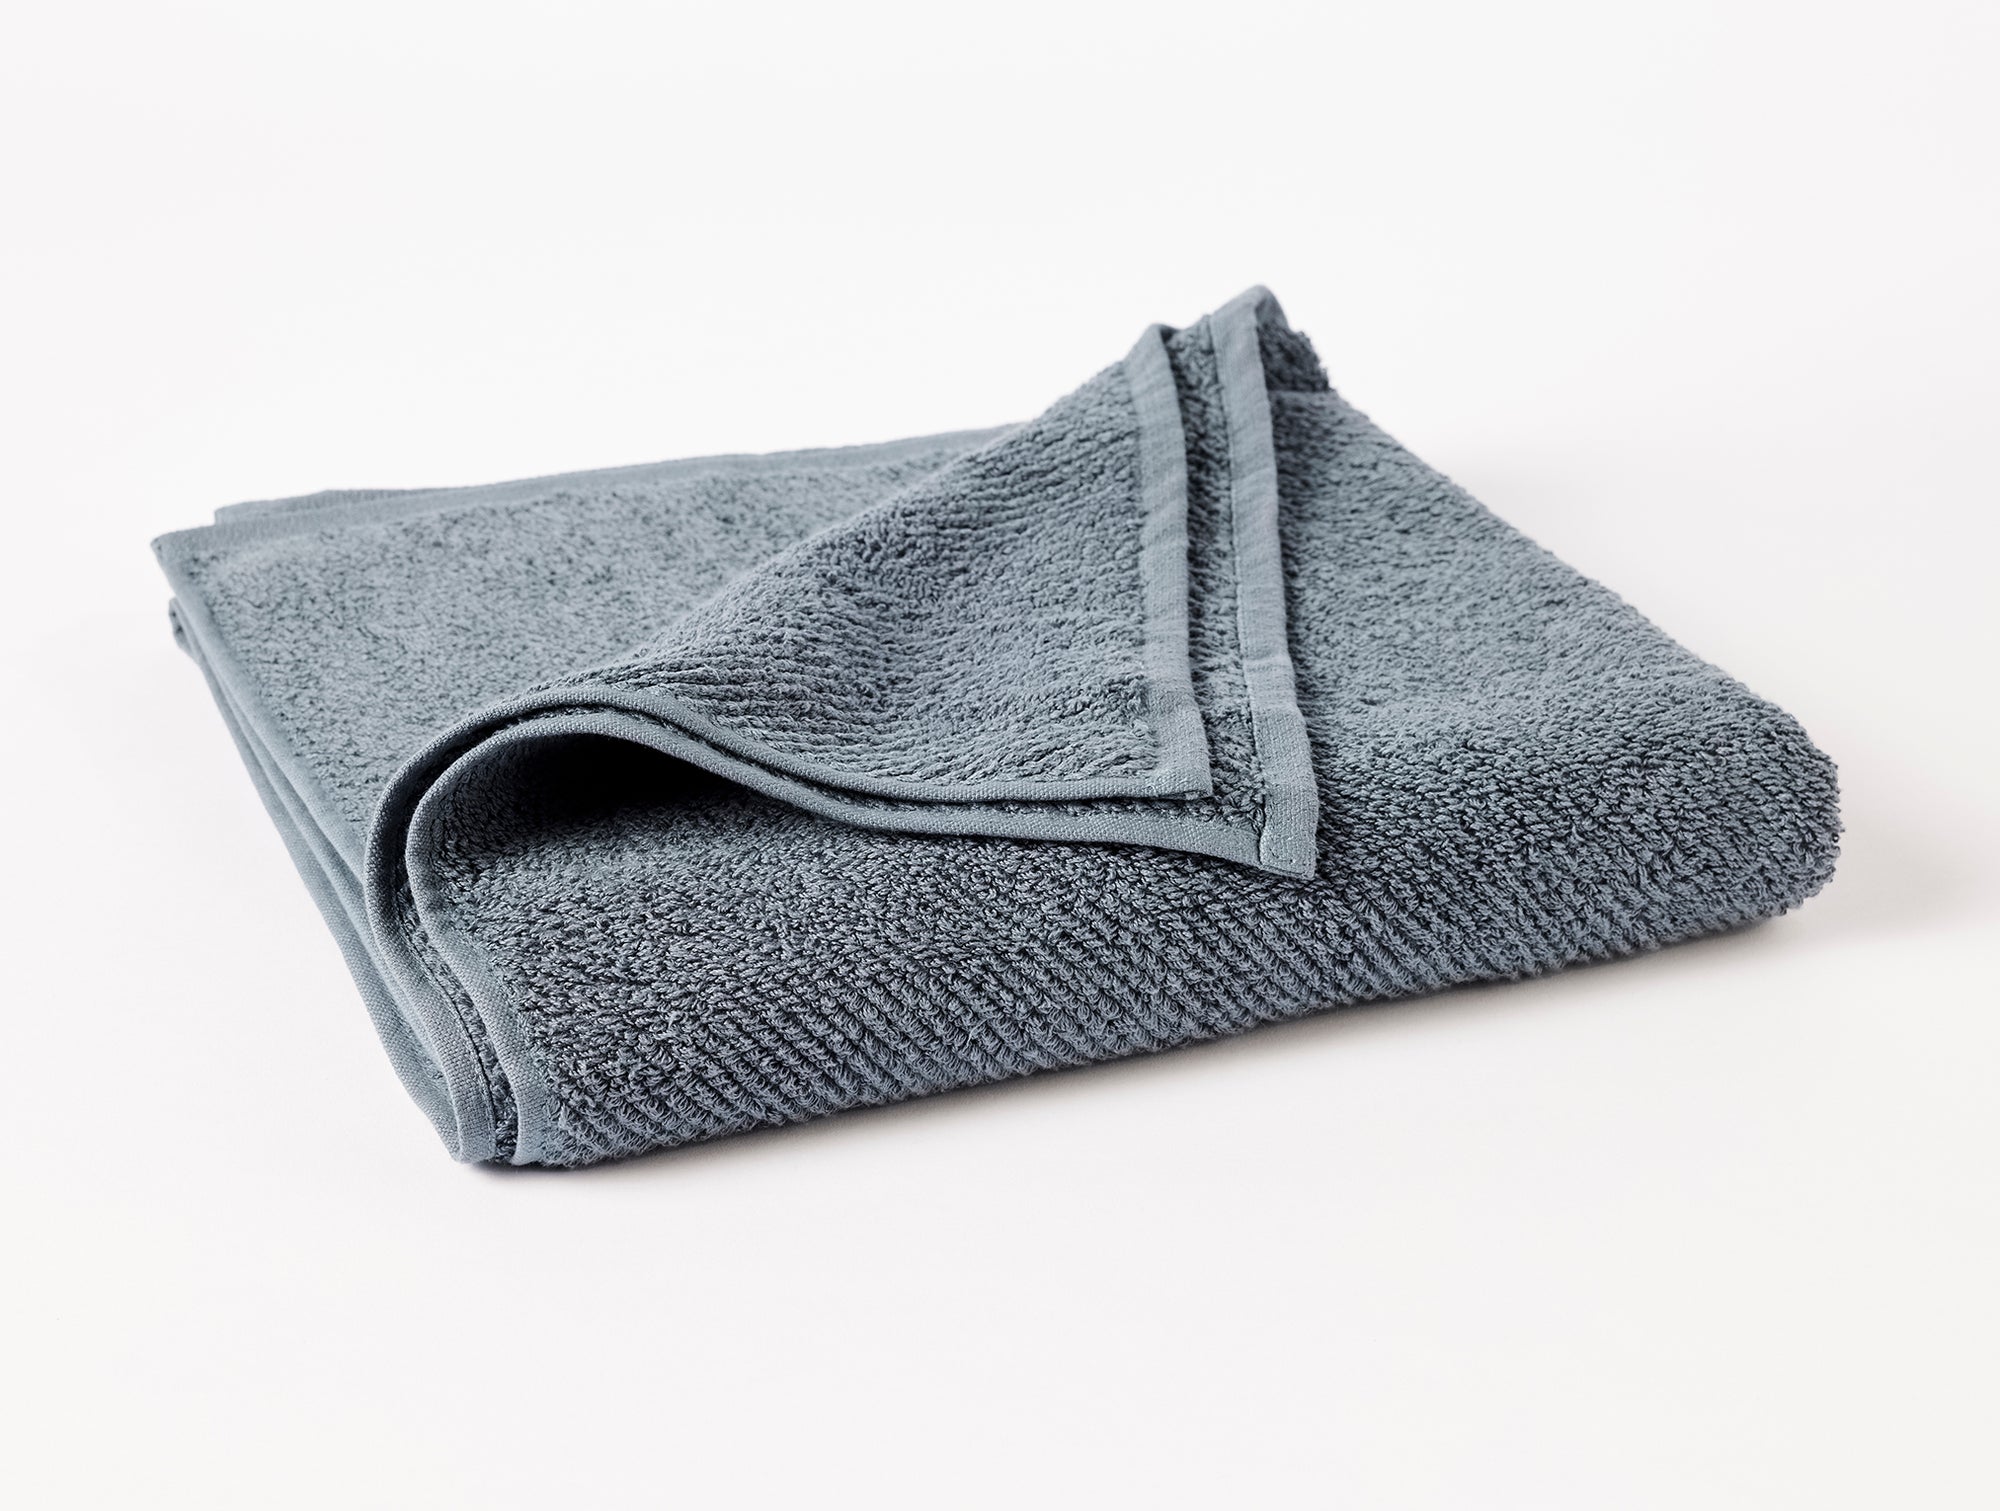 Bath Towel Armadiz 100% Cotton Towel 140x70cm - T8521-A1